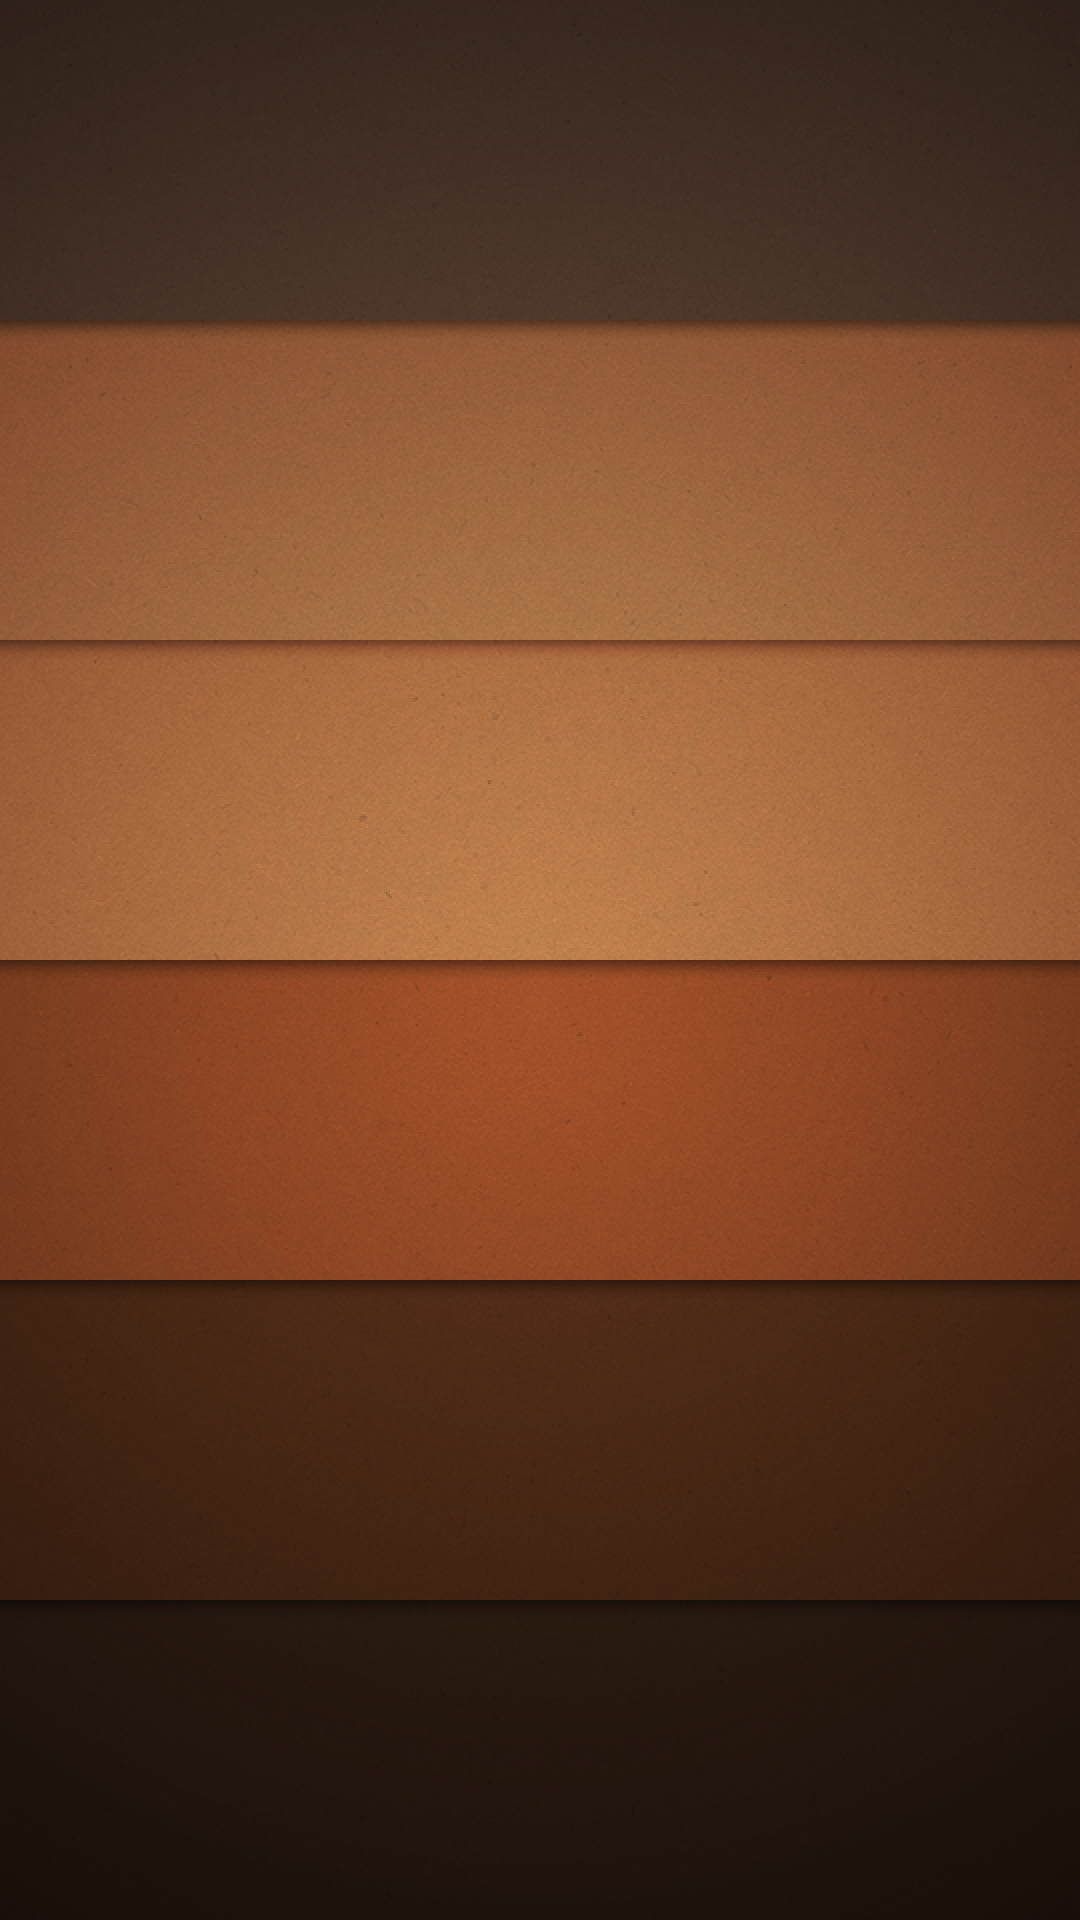 android marshmallow wallpaper 1080p,arancia,marrone,giallo,linea,cielo